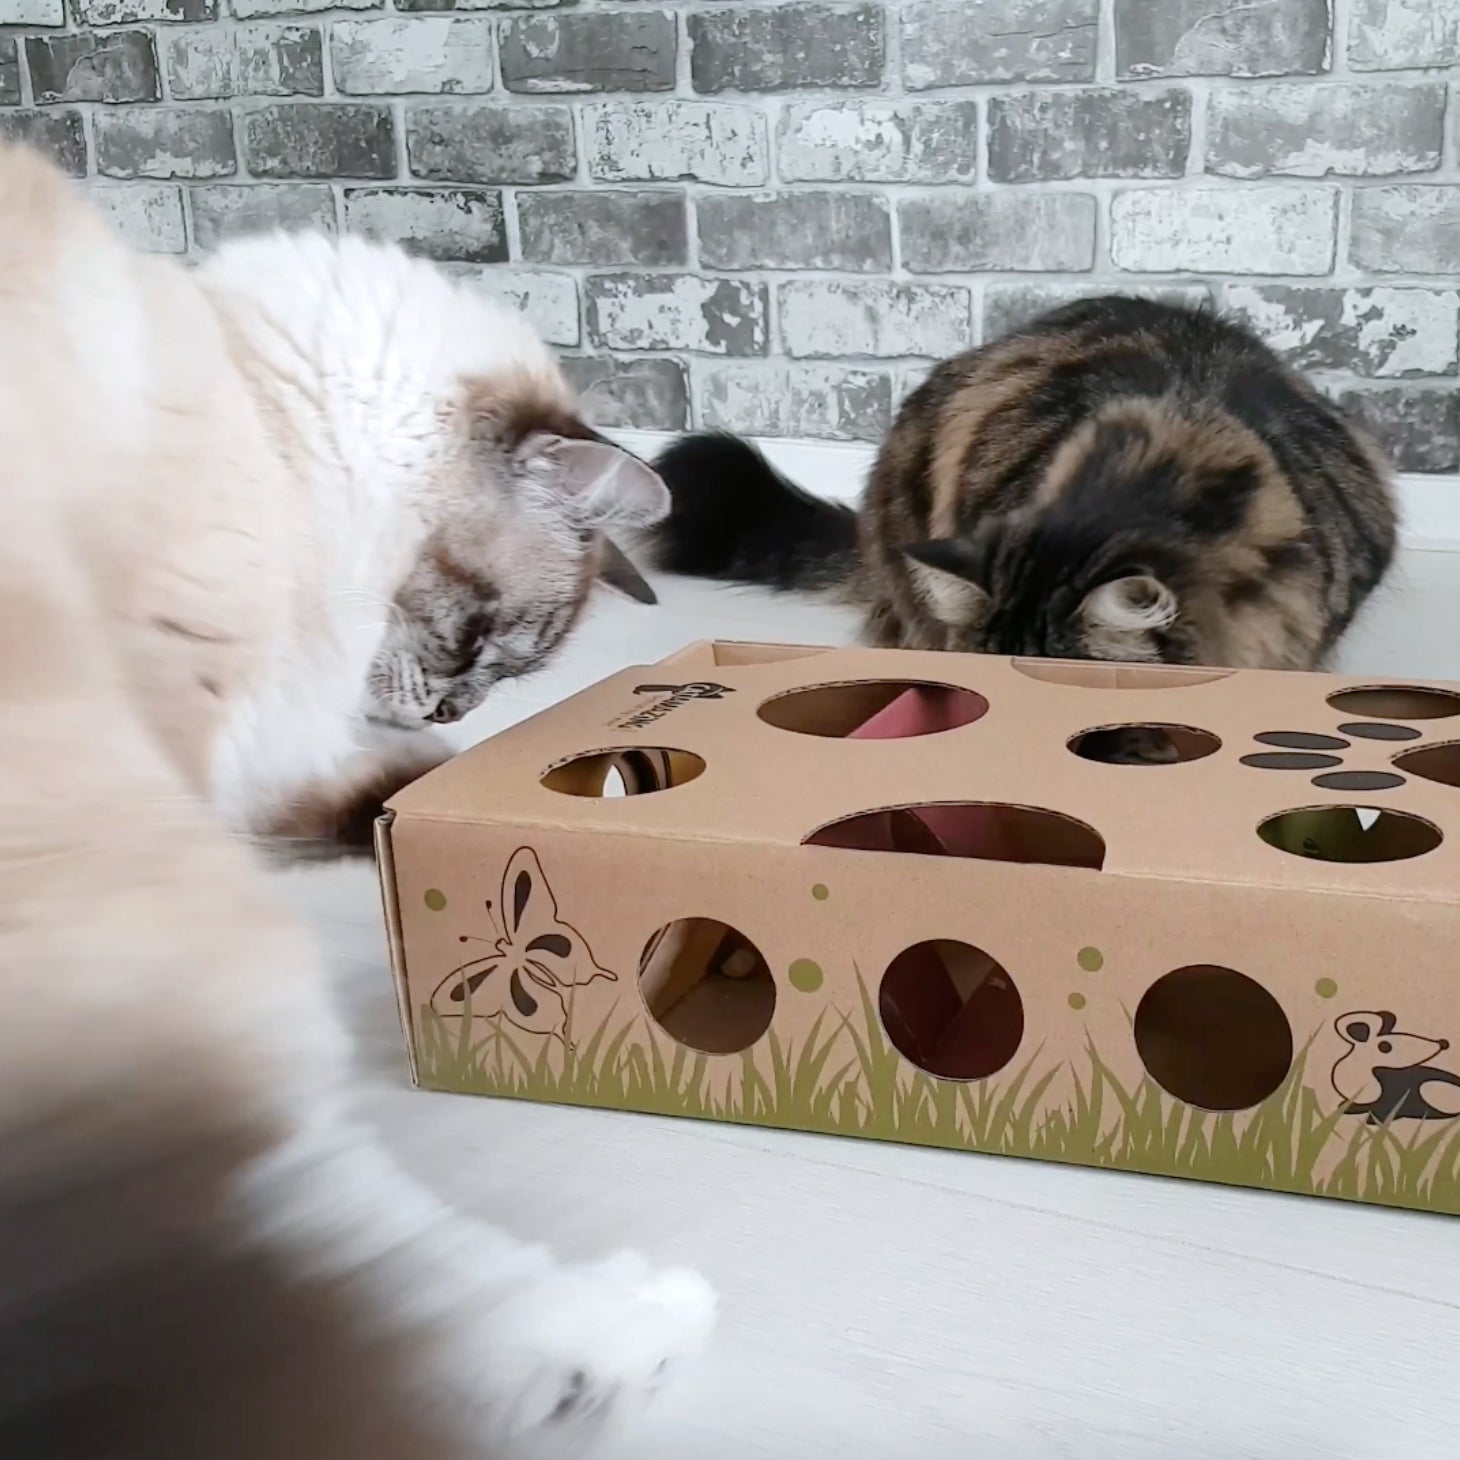 Cat Amazing CAT AMAZING – Best Cat Toy Ever! Interactive Treat